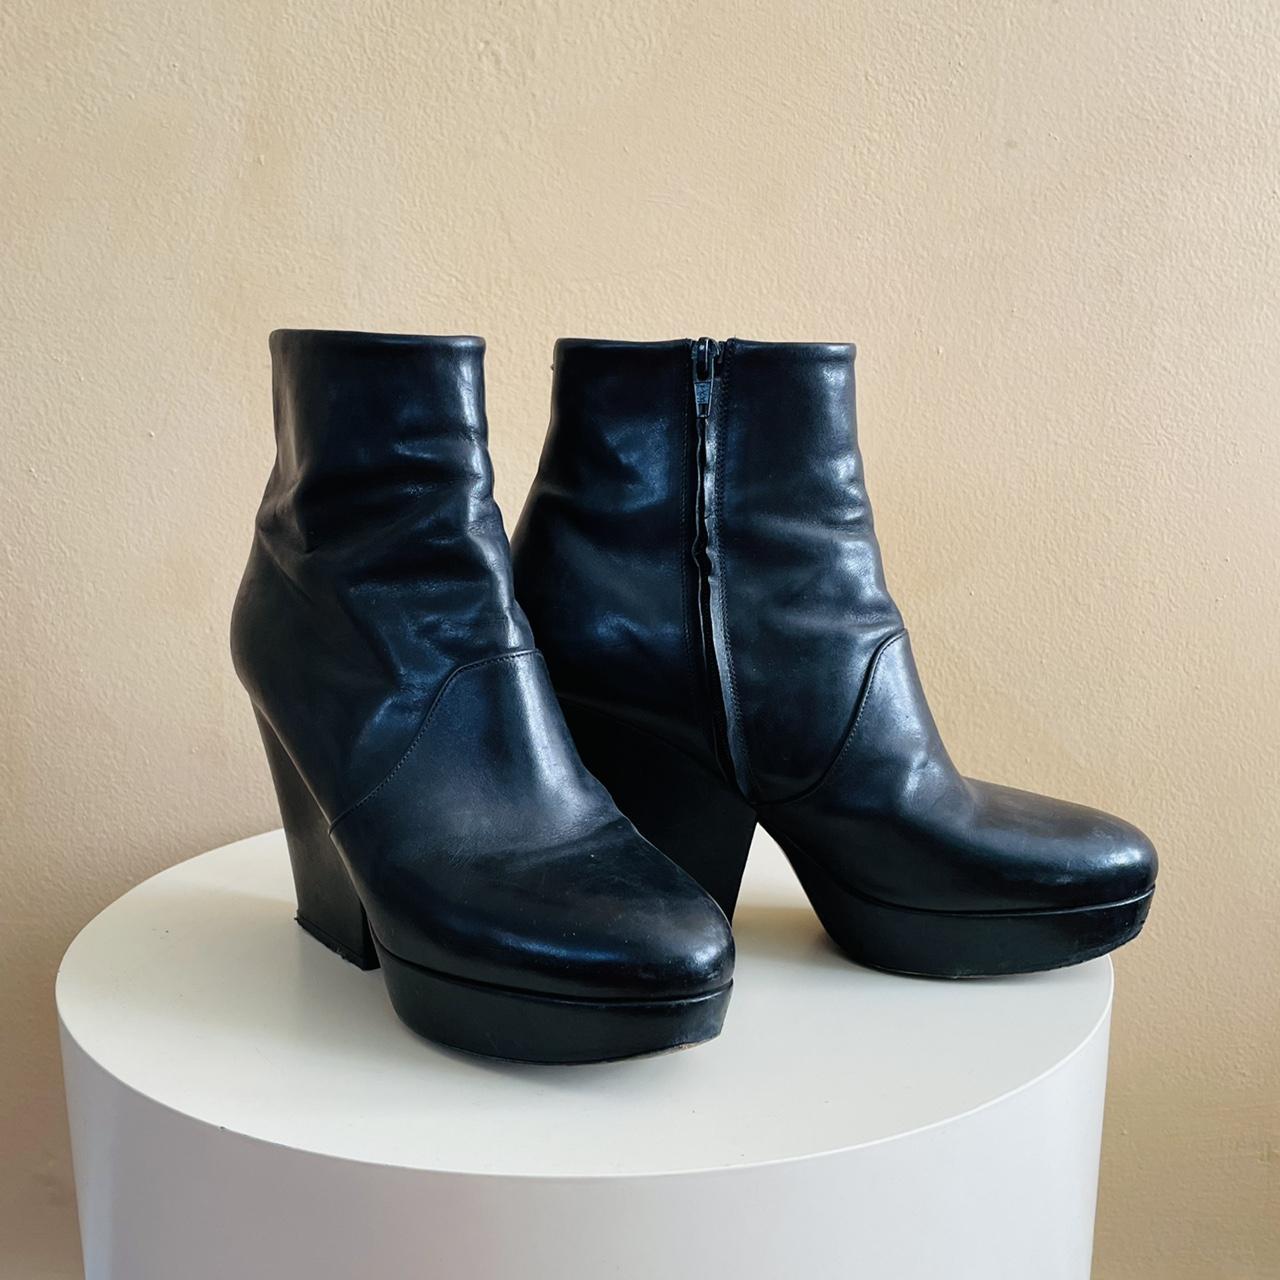 Maison Margiela Women's Black Boots